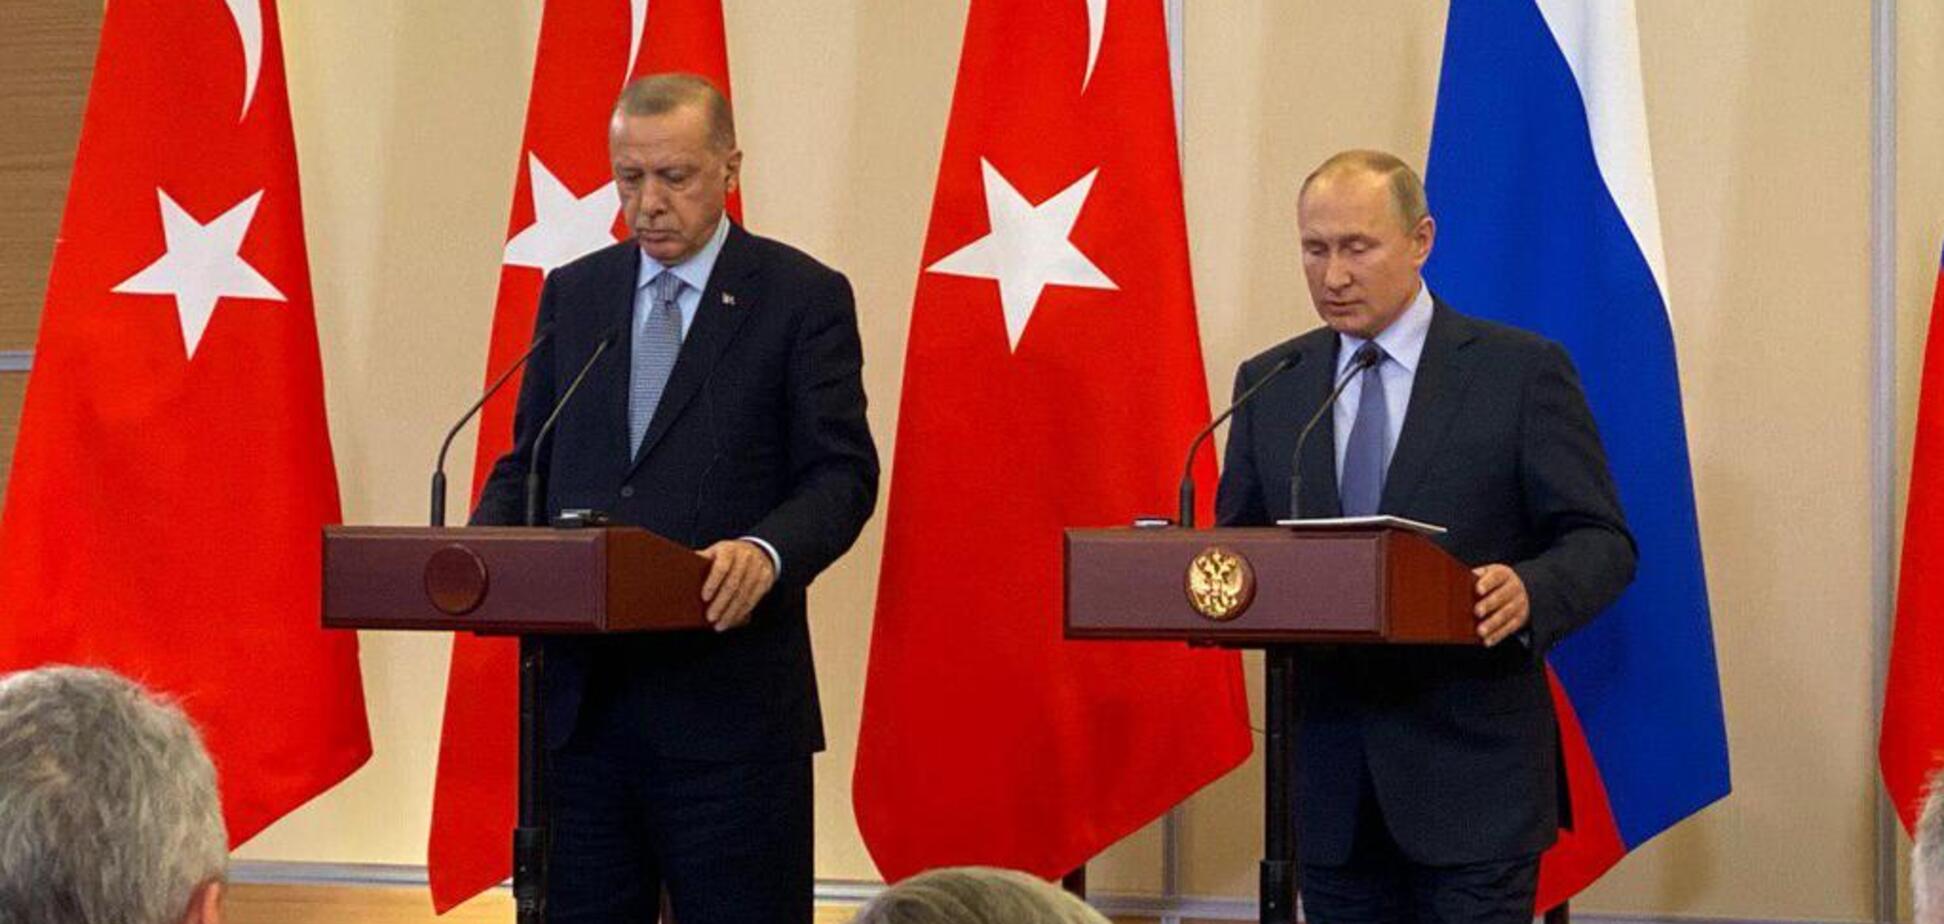 Путин и Эрдоган встретились и объявили о судьбоносных решениях